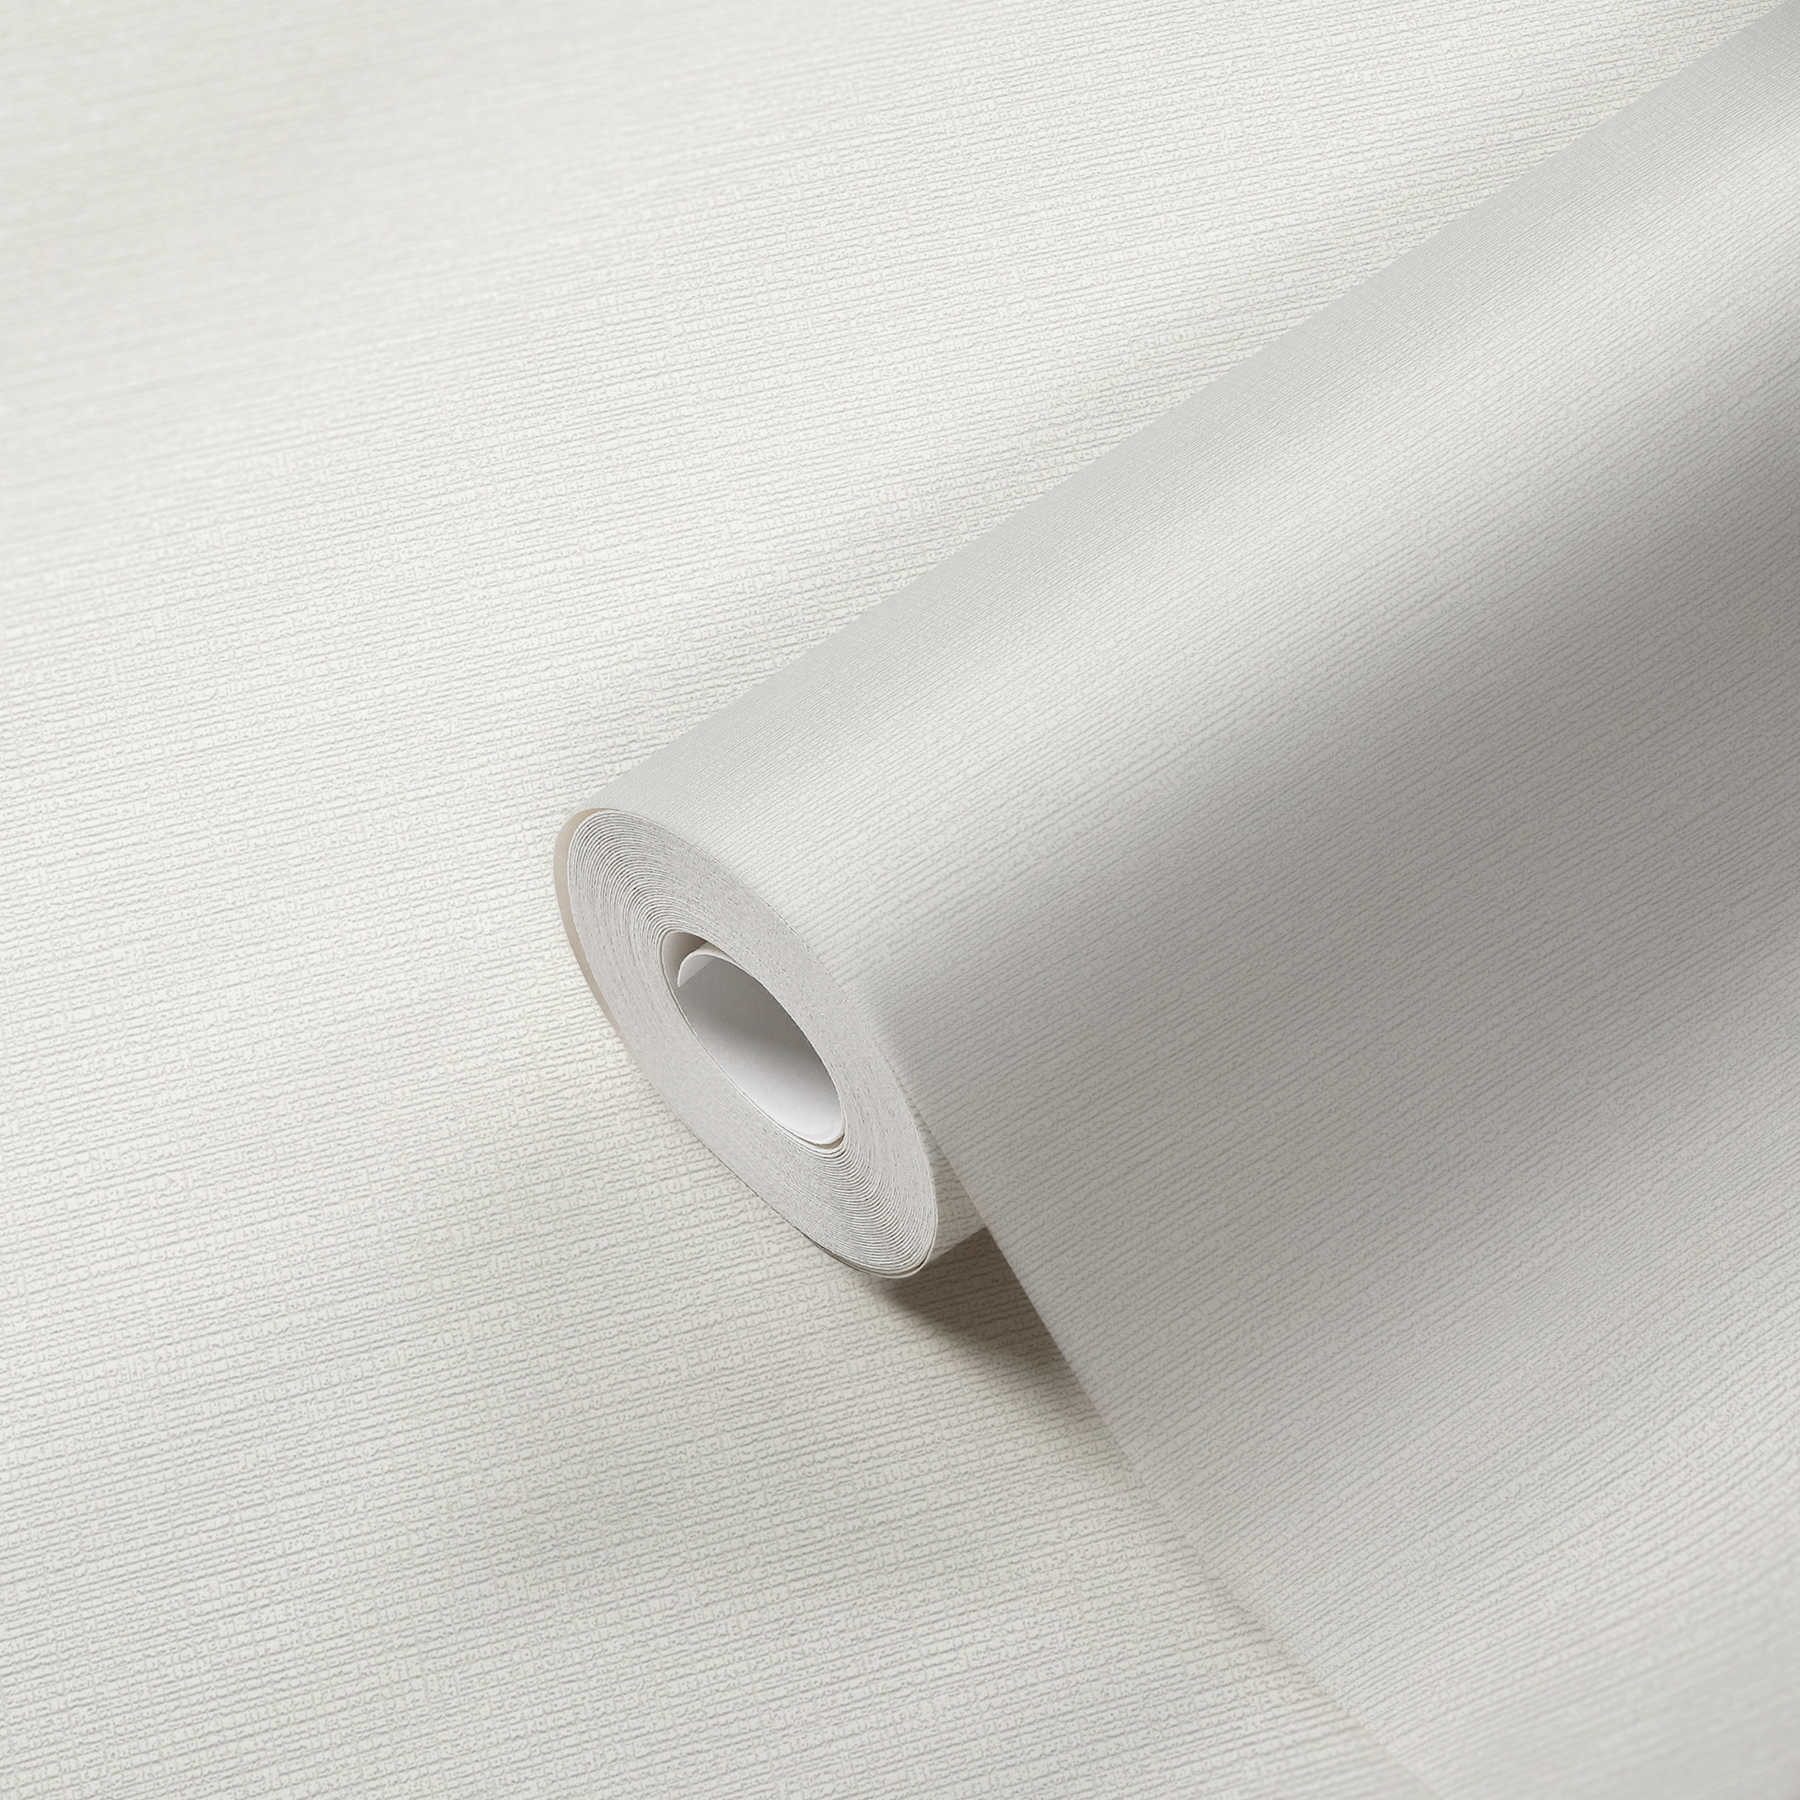             Vliestapete Weiß mit Retro Struktur & Textileffekt
        